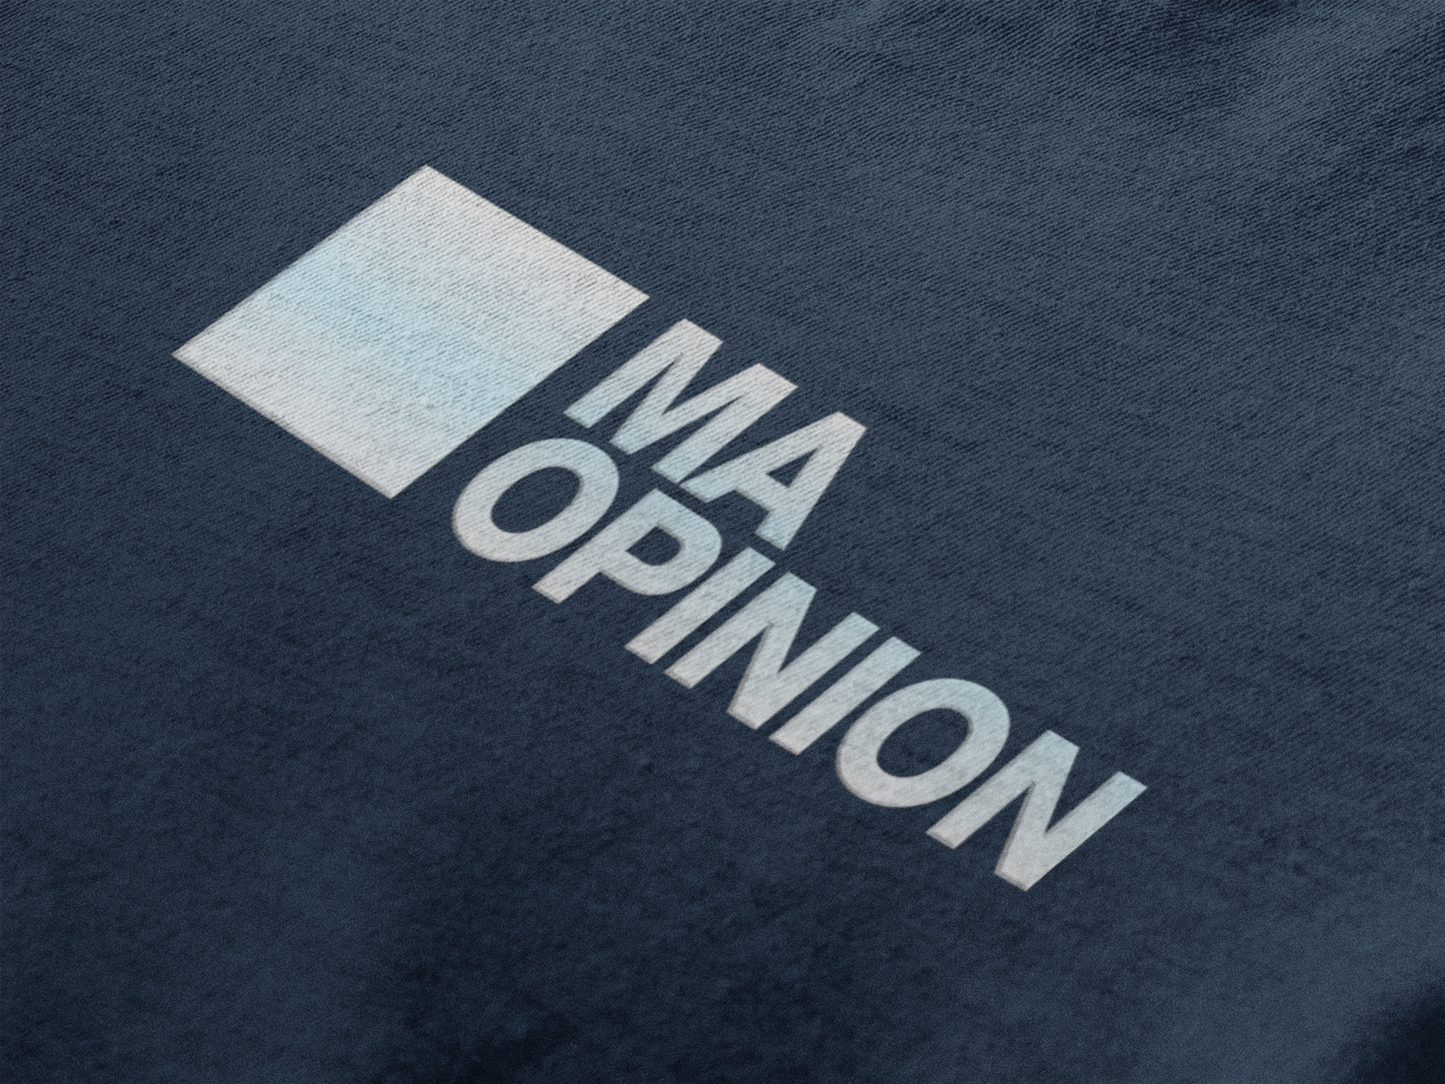 T-shirt unisexe - Ma Opinion